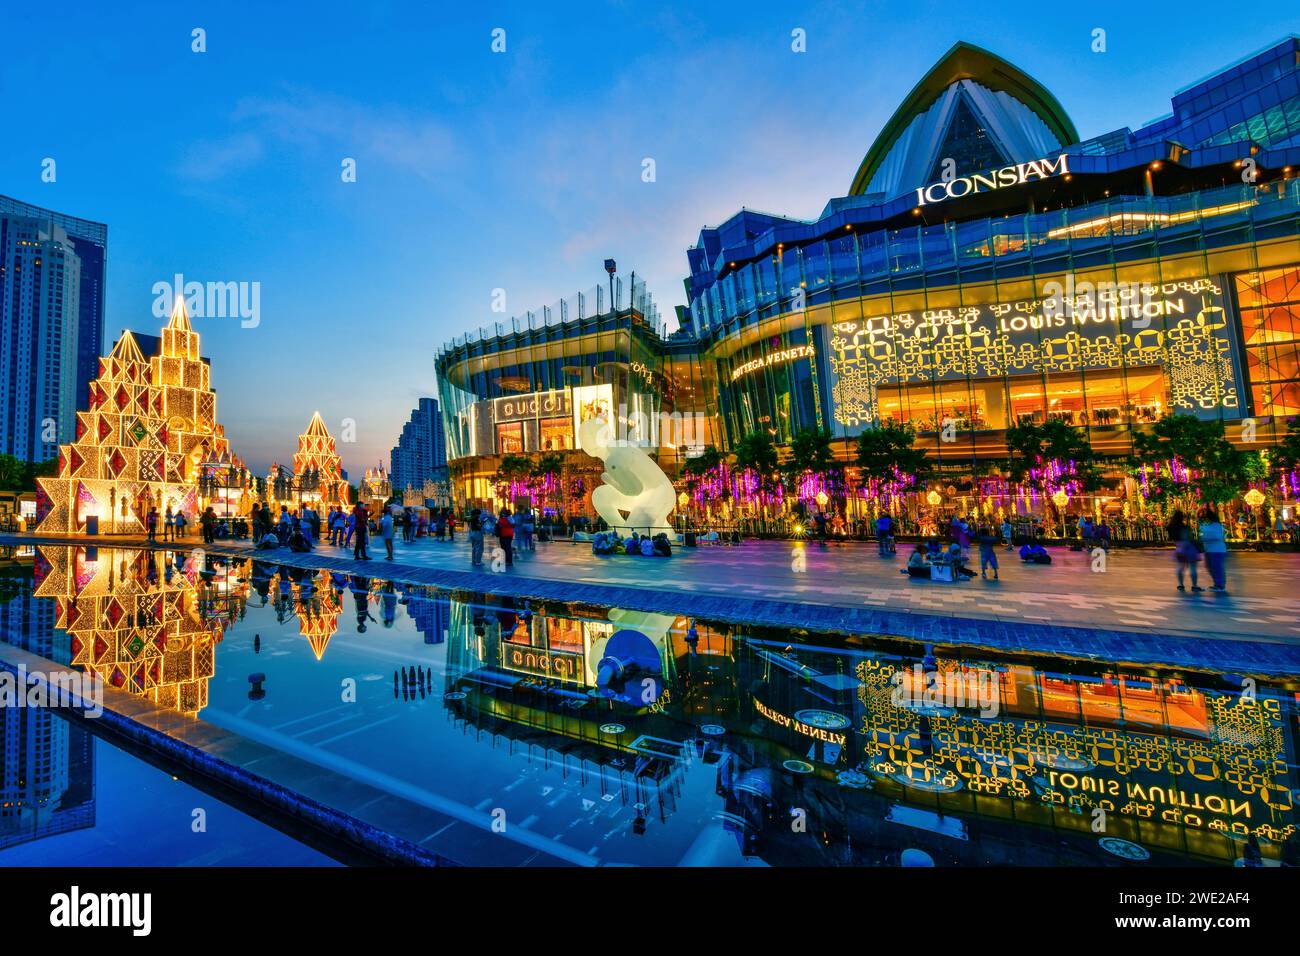 Bangkok, Thailandia - novembre 20,2020: Illuminazione Iconsiam e decorazioni colorate per celebrare l'evento di Capodanno lungo la baia di Chao Phraya Foto Stock